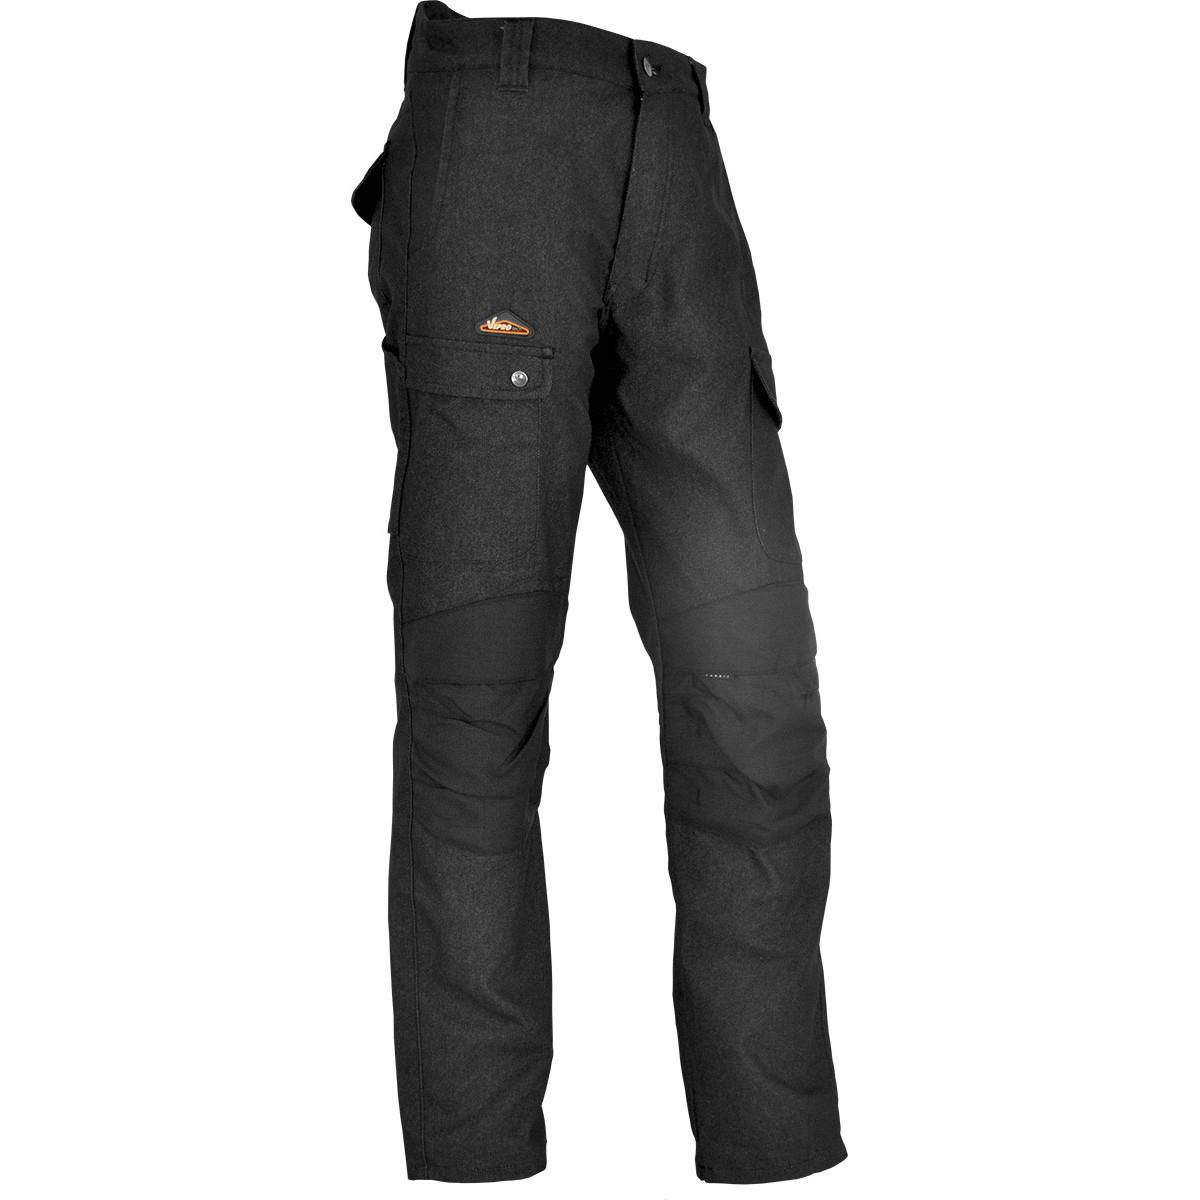 Pantalon de chantier ENDU Taille 38 Noir, poches multiples, genouillères incluses